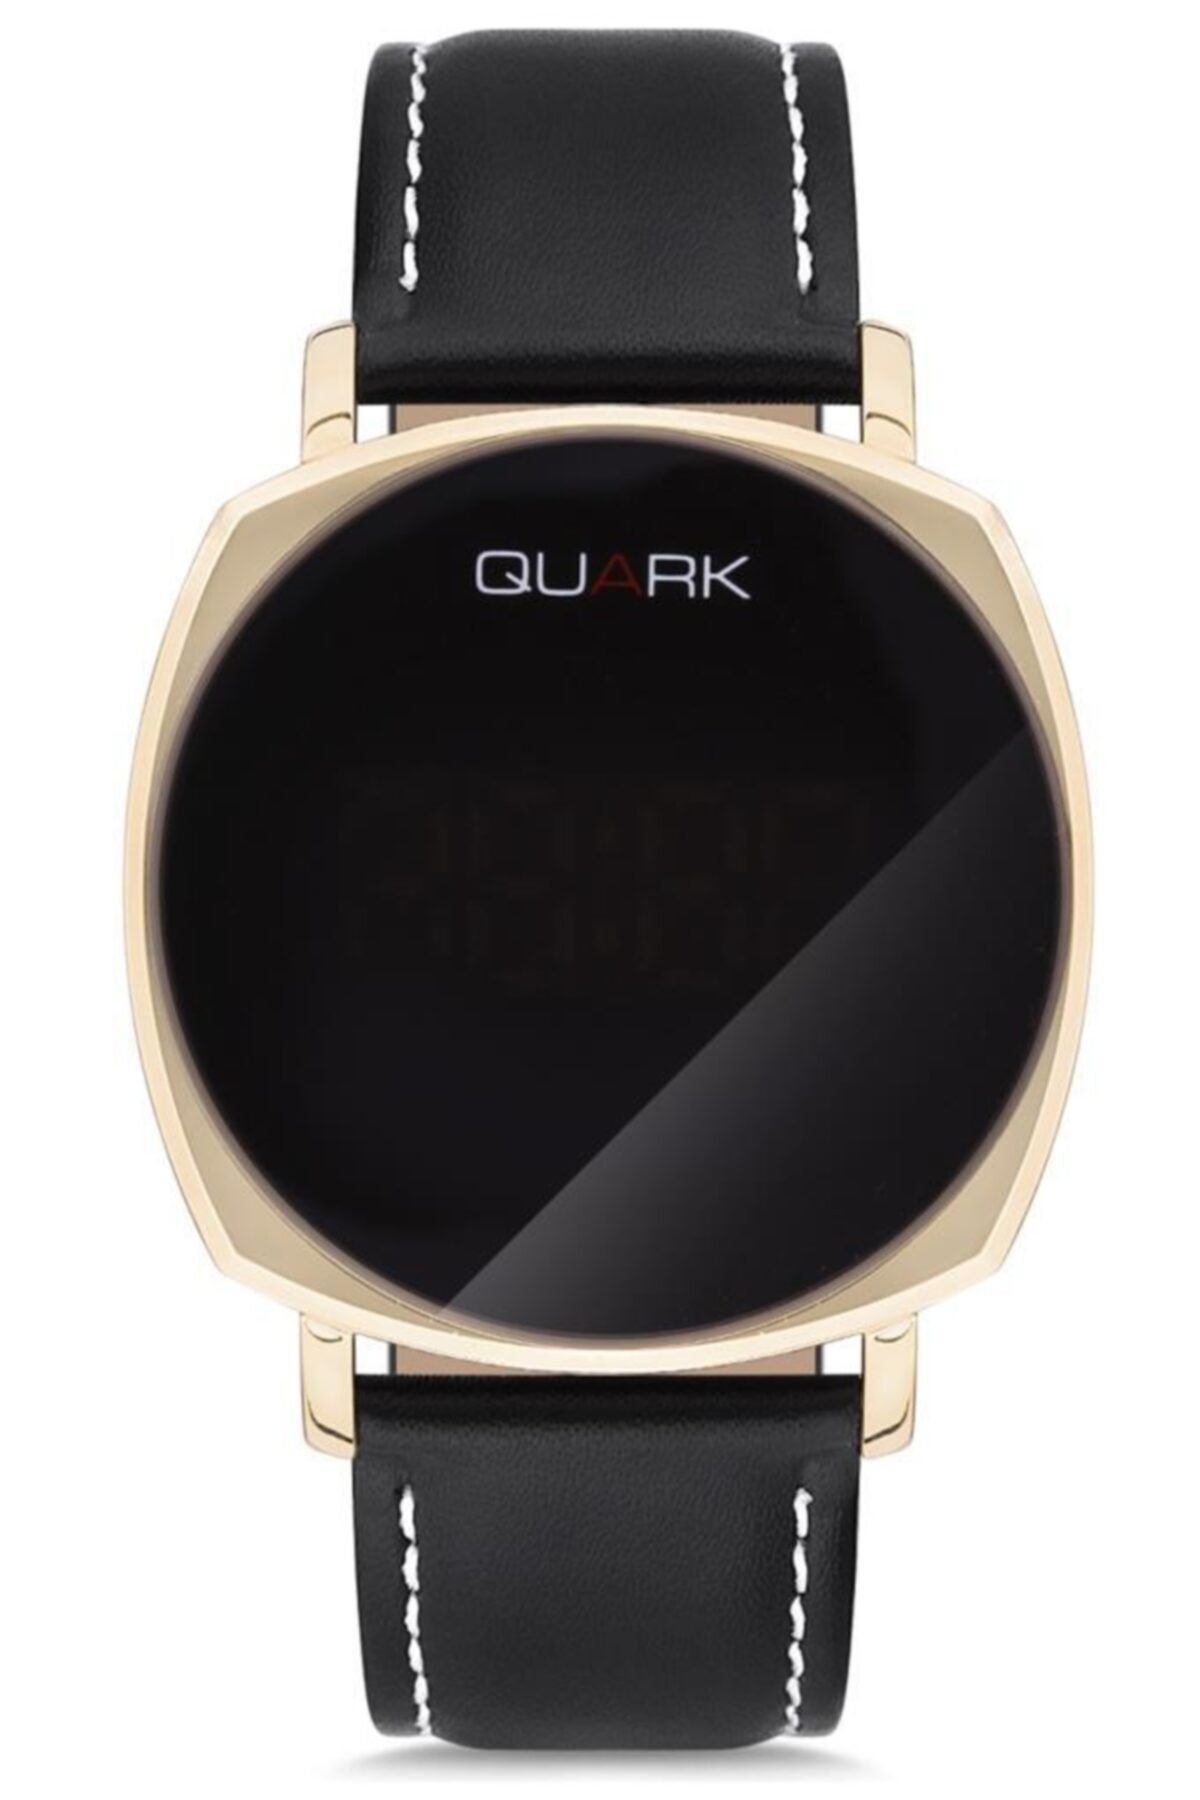 Quark Qld-100gl-1a